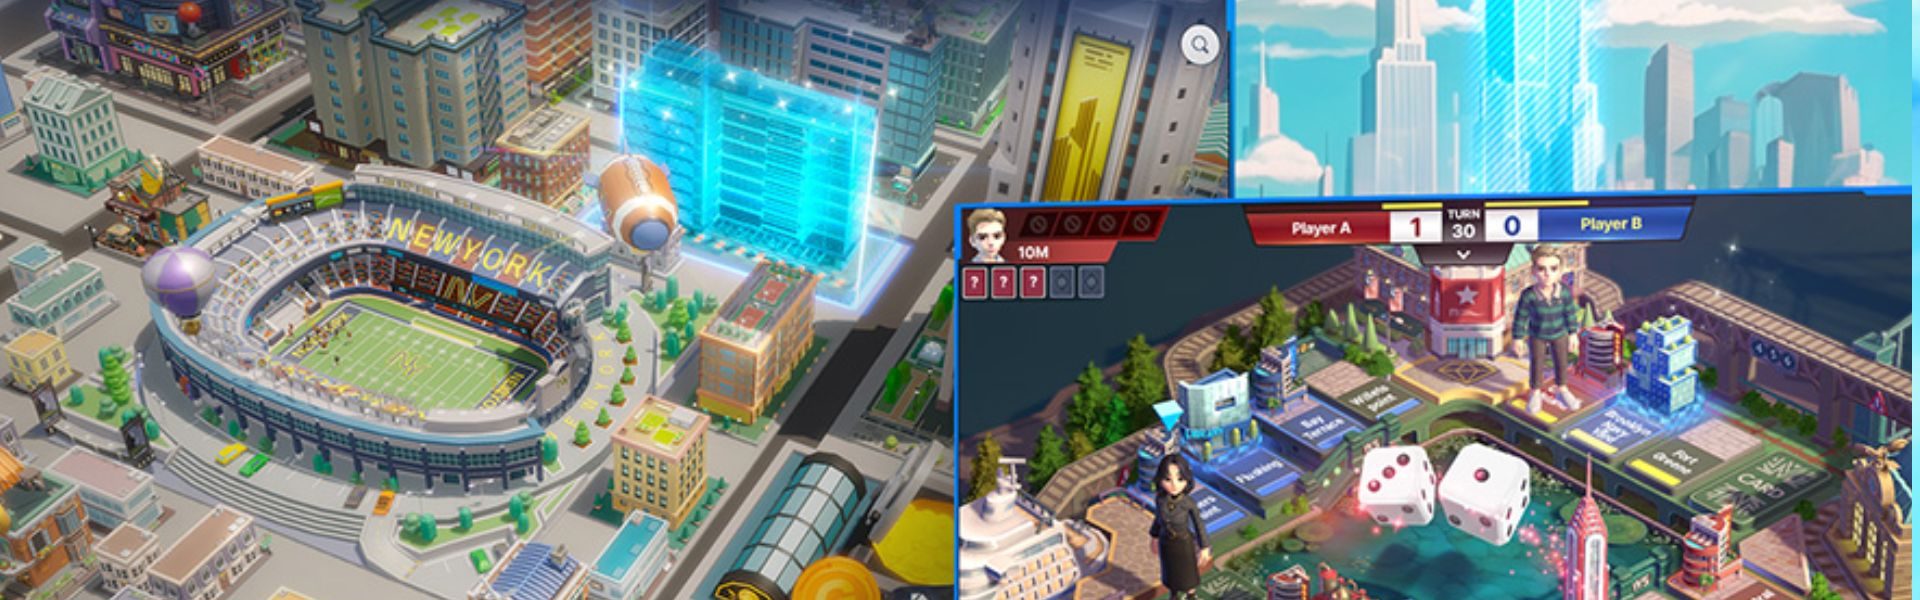 Meta World: My City to gra planszowa z Metaverse, cokolwiek to znaczy